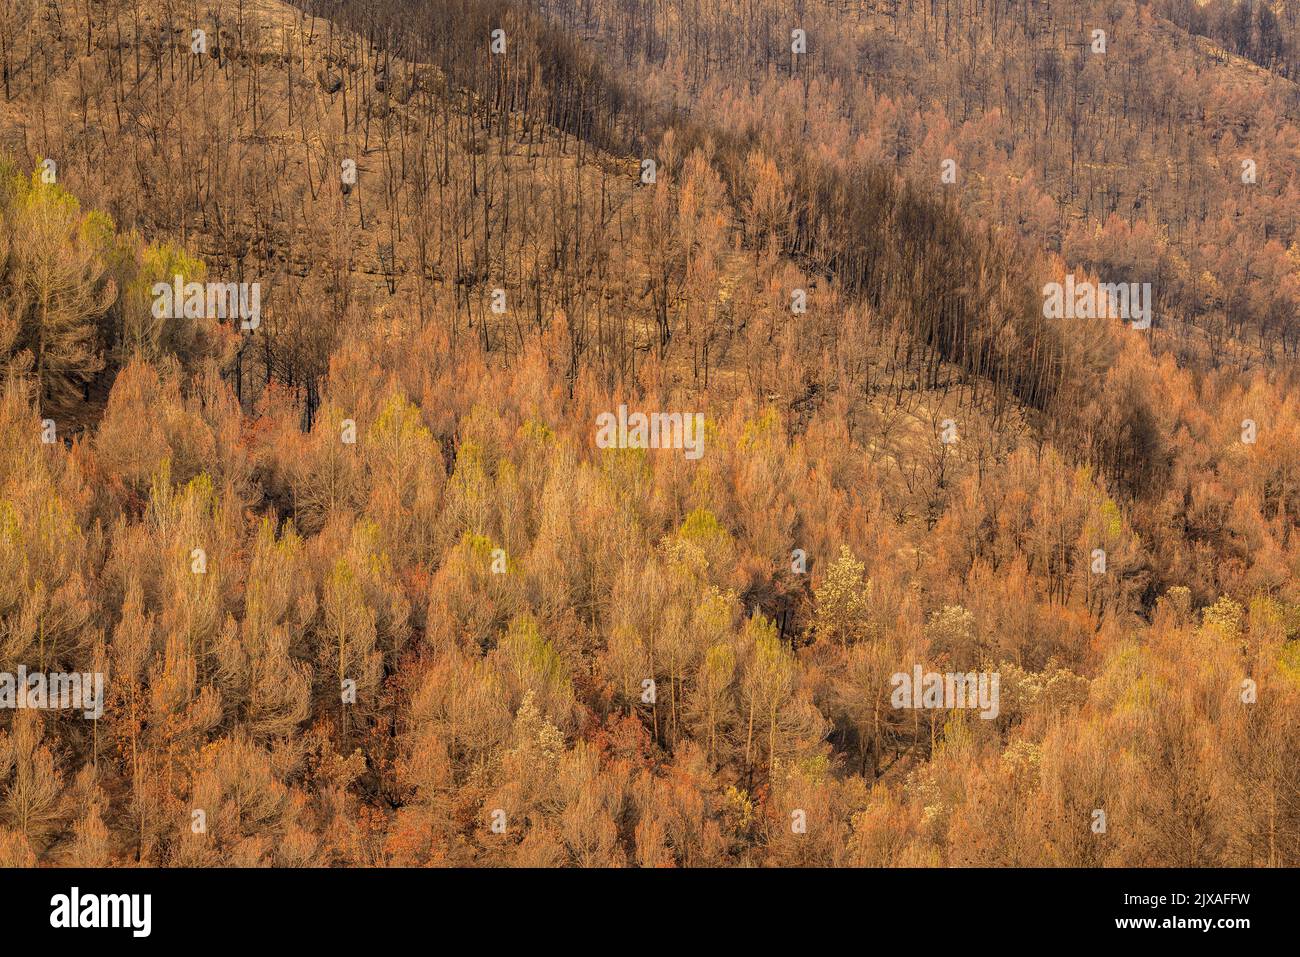 Tubs (Zinken auf katalanisch) und das Flequer-Tal nach dem Brand der Pont de Vilomara von 2022 im Naturpark Sant Llorenç del Munt i l'Obac Katalonien Spanien Stockfoto